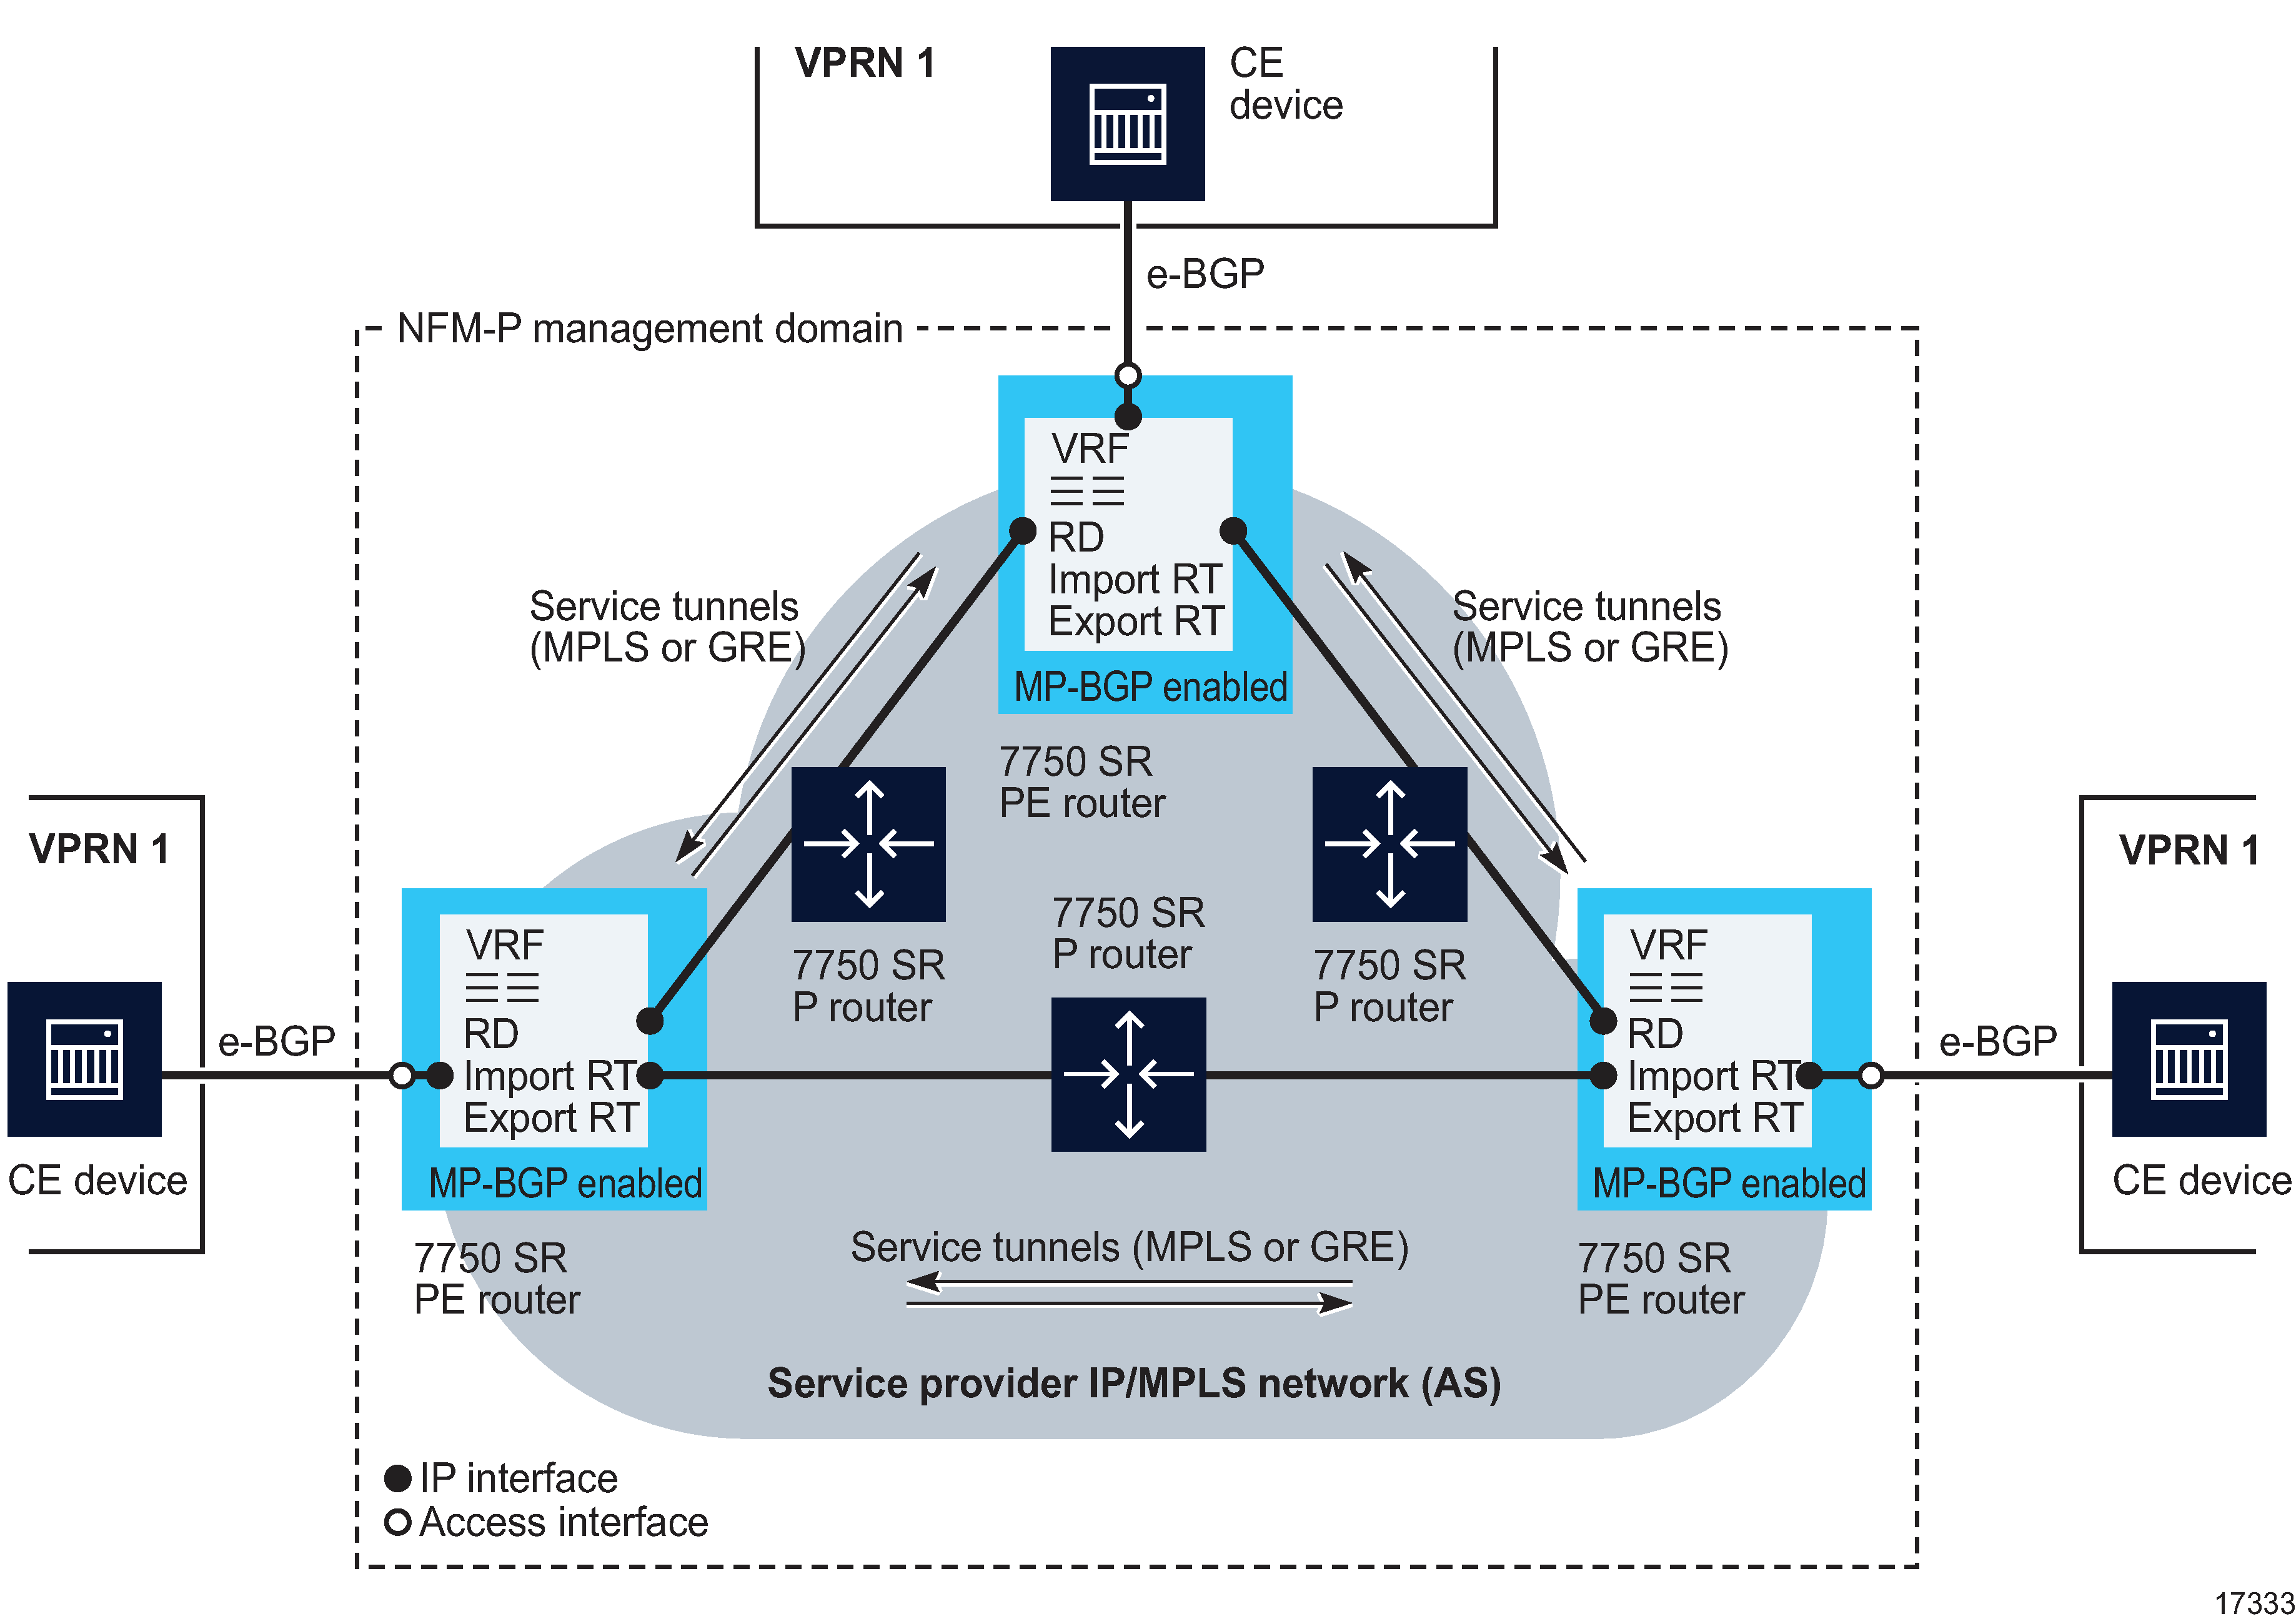 Sample VPRN service